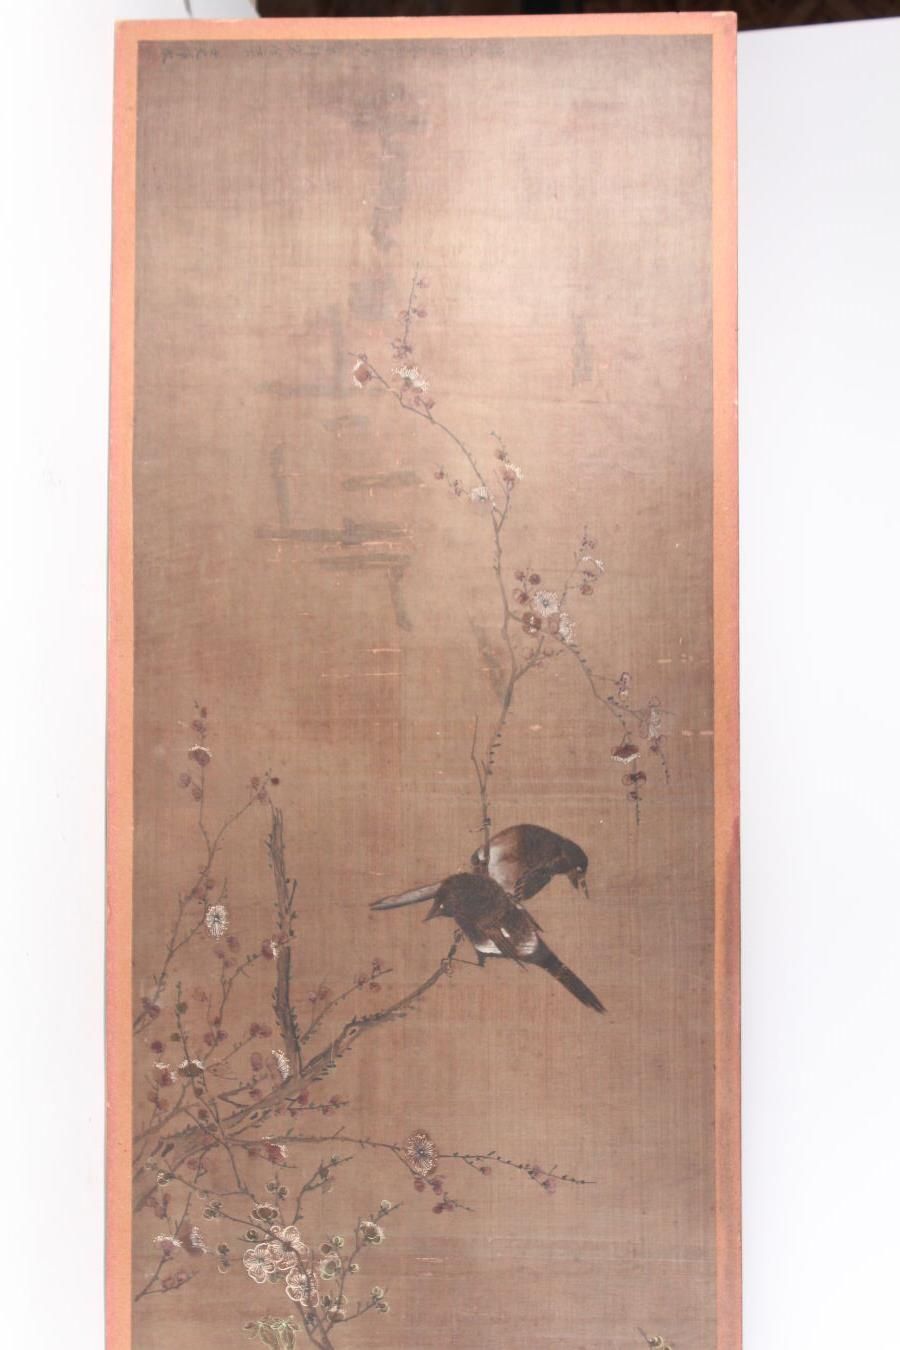 Null 丝绸上的水墨和彩色画
中国，20世纪初
描绘喜鹊栖息在梅花树上，天书签名云冰和印章；磨损，小裂缝，小修复
37 x 160 厘米